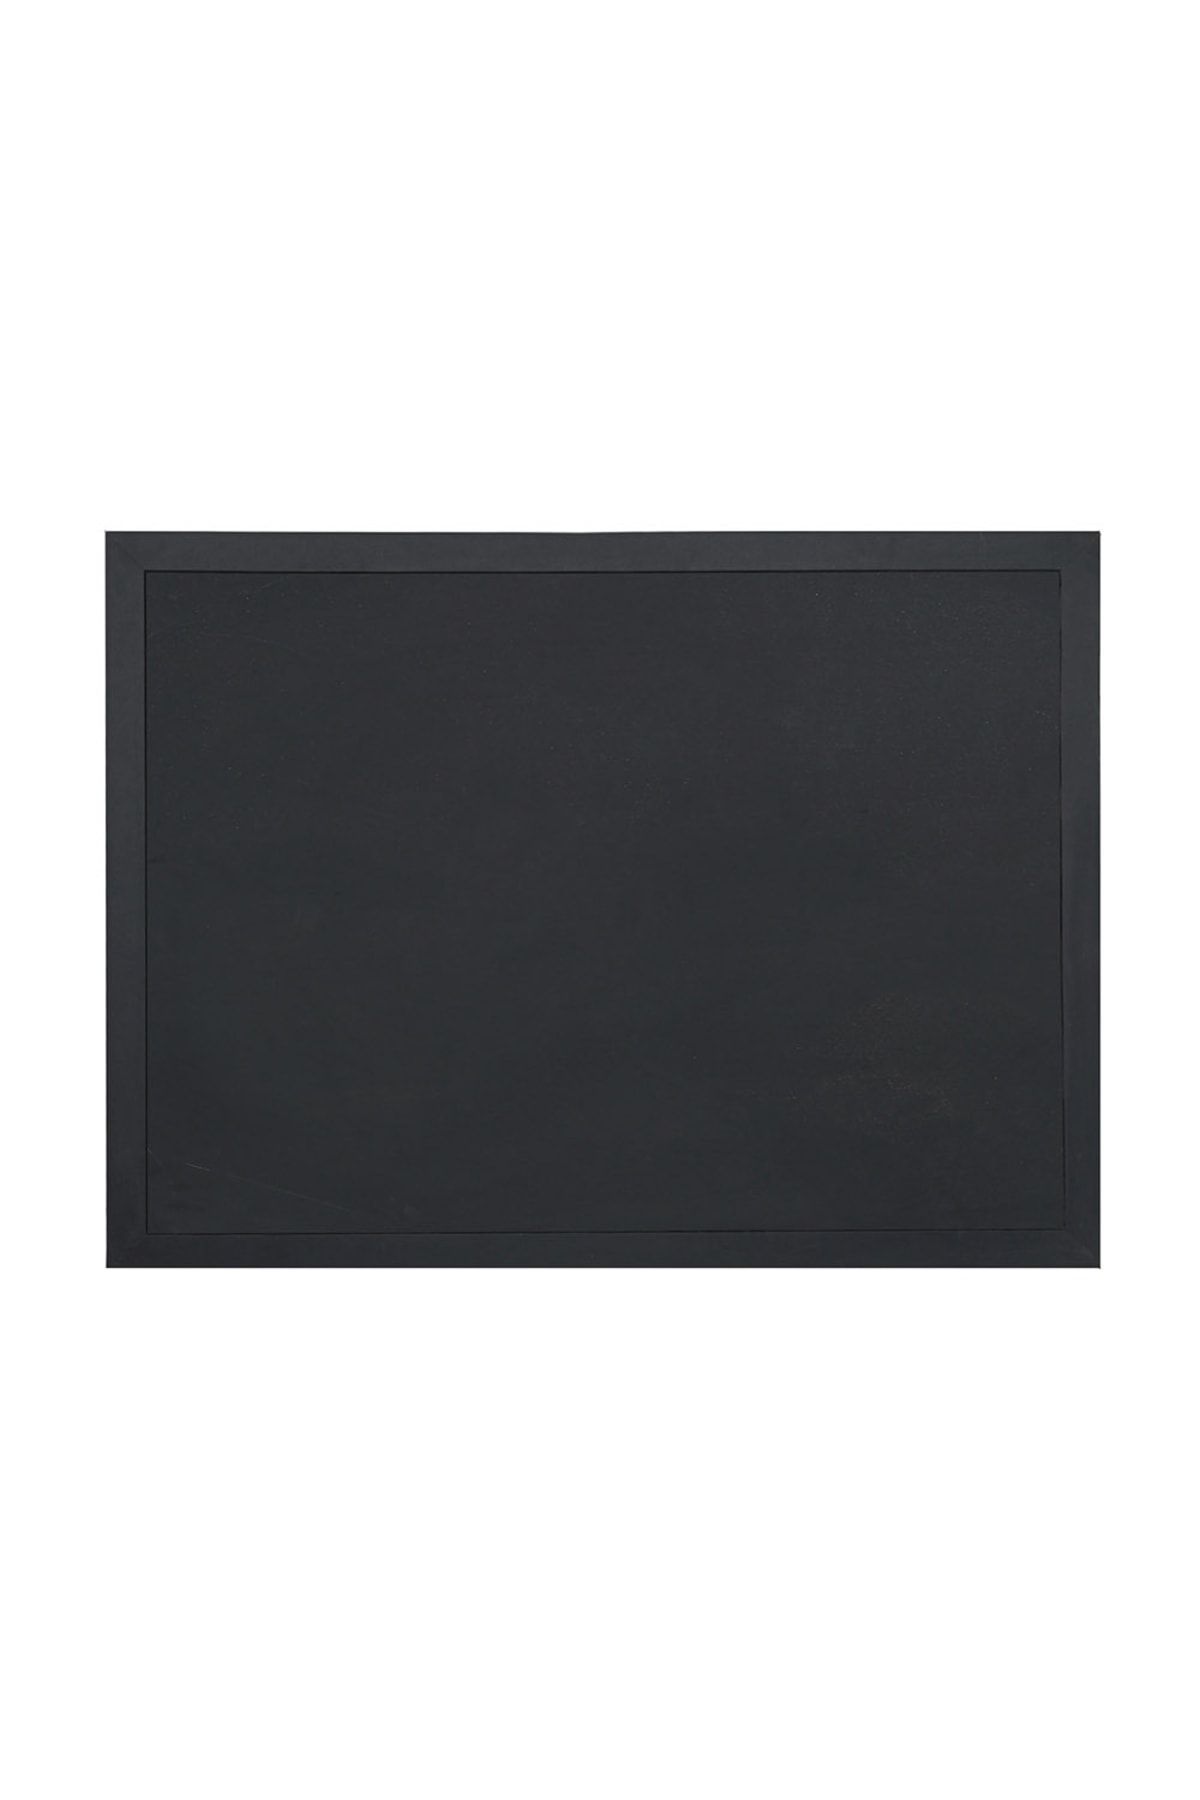 Vivekka 100x200 Siyah Ahşap Çerçeve Laminat Tebeşir Yazı Tahtası - Siyah